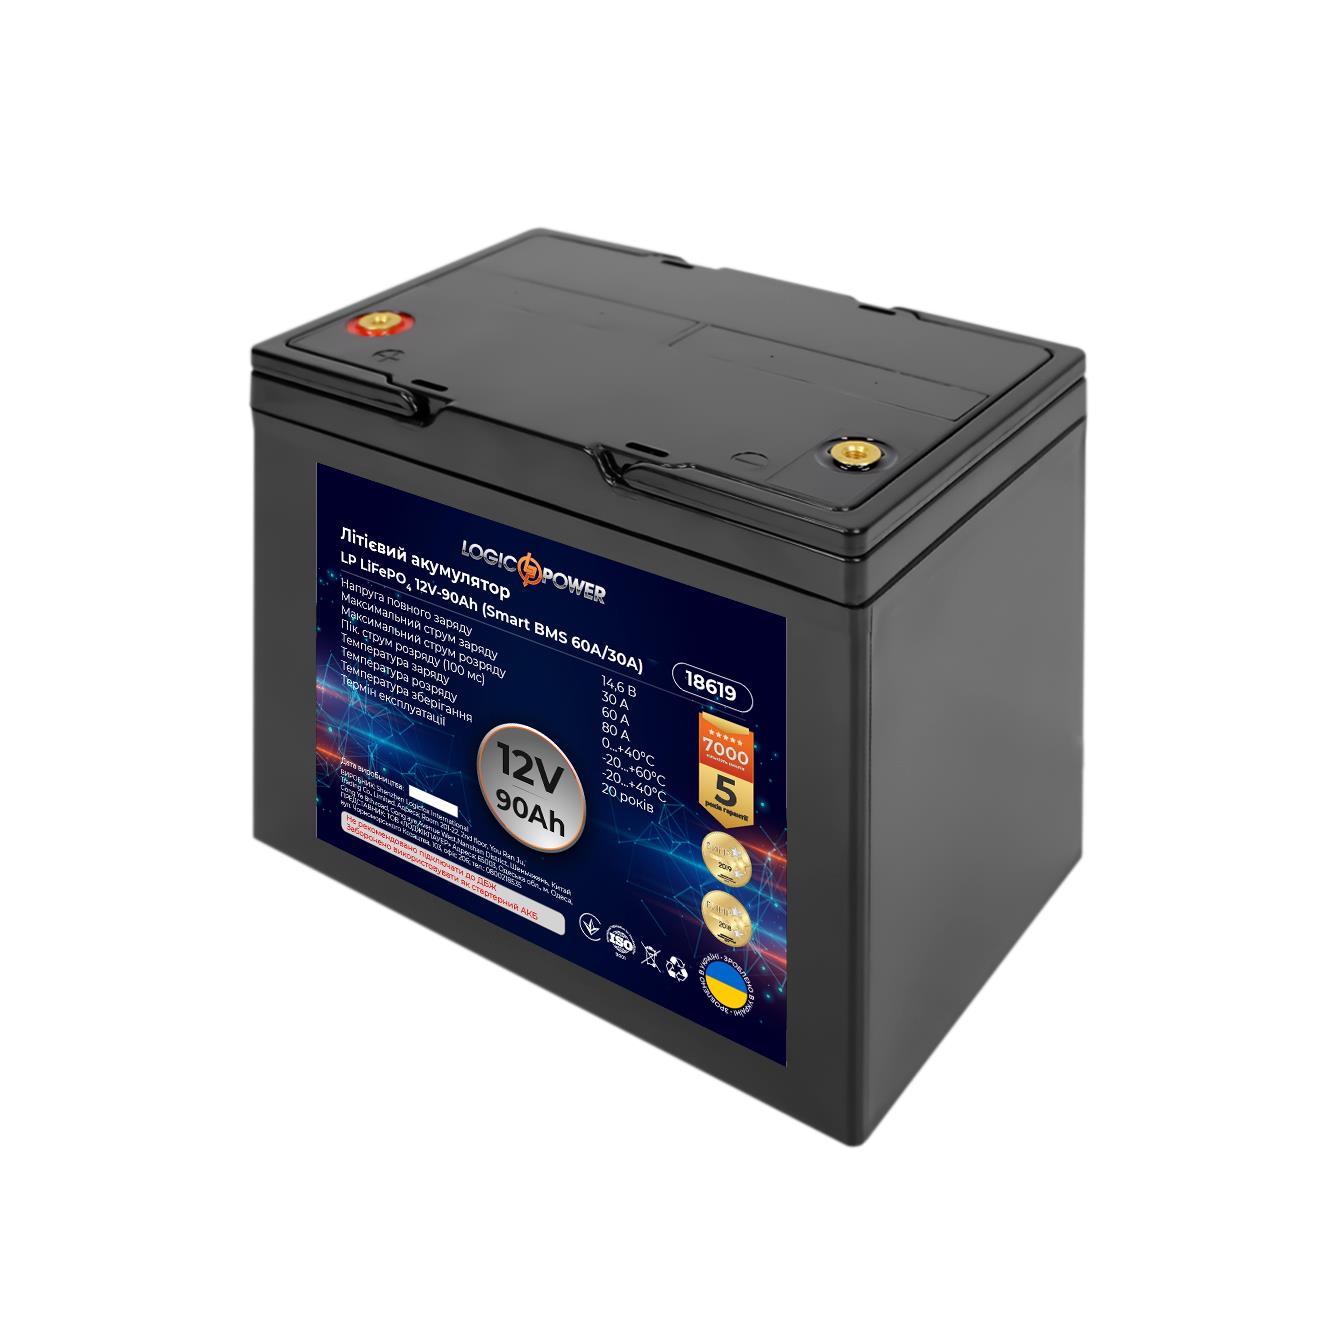 Купить аккумулятор литий-железо-фосфатный LogicPower LP LiFePO4 12V - 90 Ah (Smart BMS 60A/30А) пластик (18619) в Чернигове